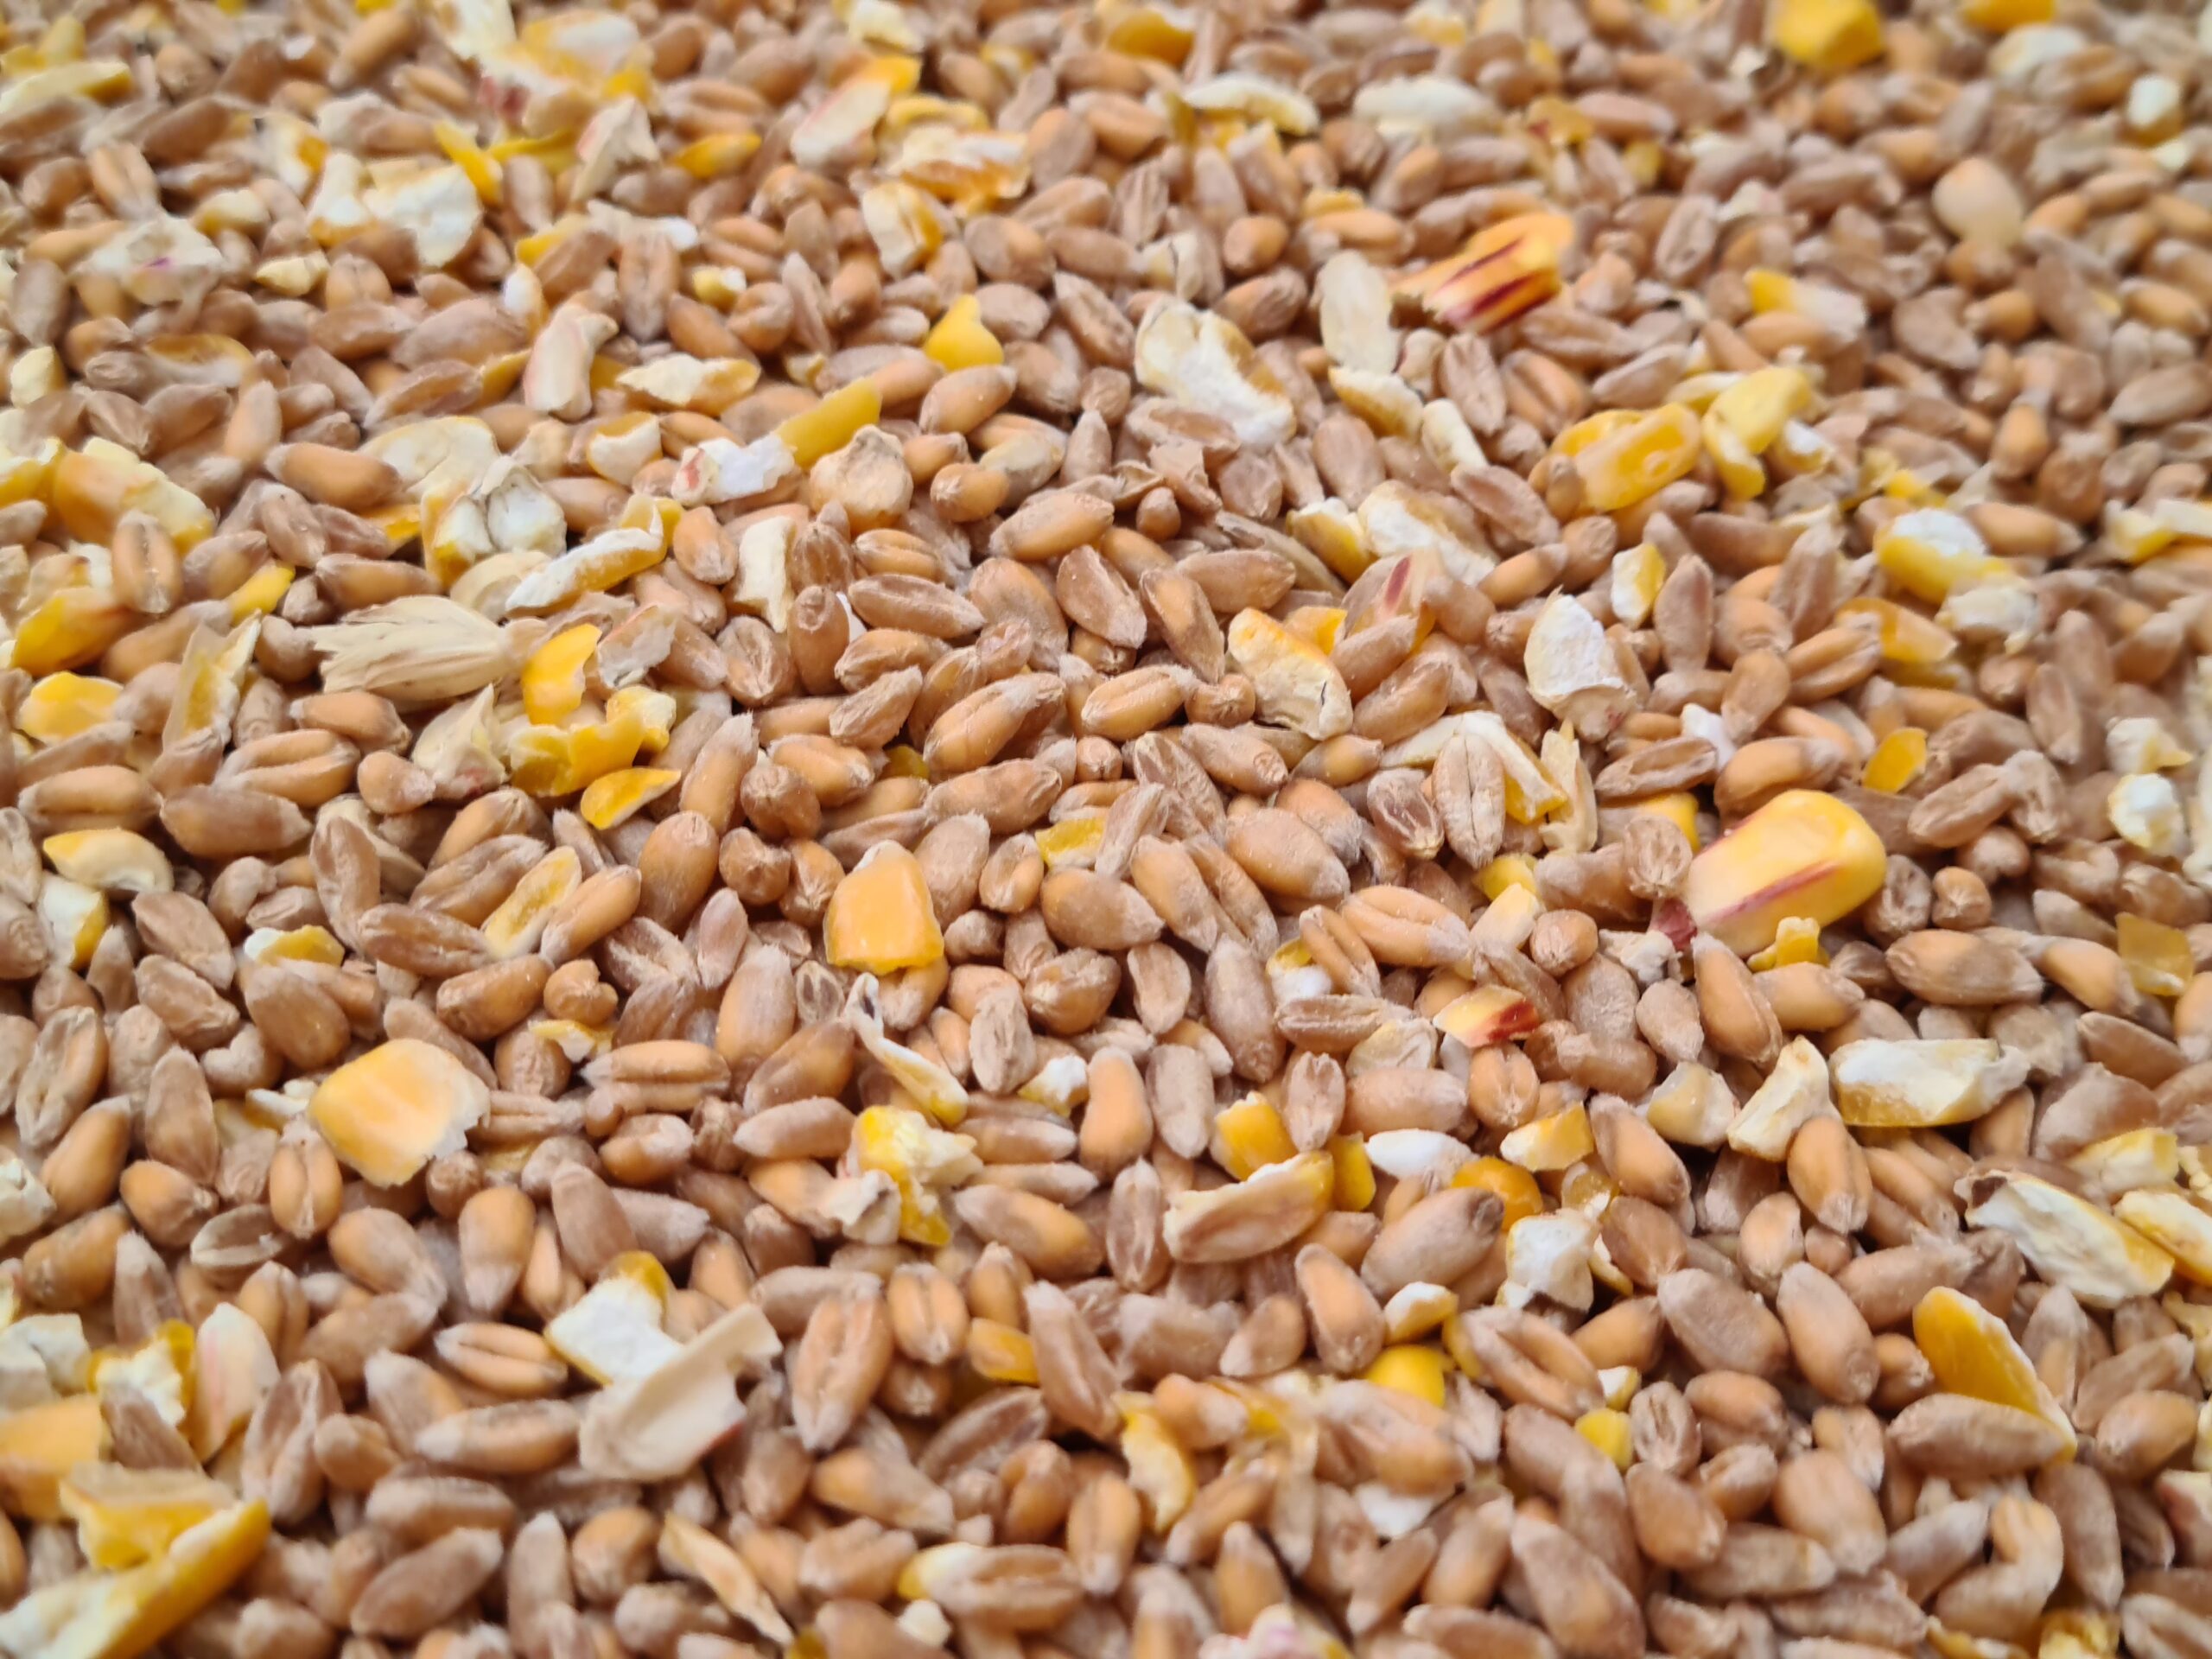 روسيا تواصل خفض ضريبة تصدير القمح.. وتترك الذرة دون تغيير للفترة من 3 إلى 9 يوليو